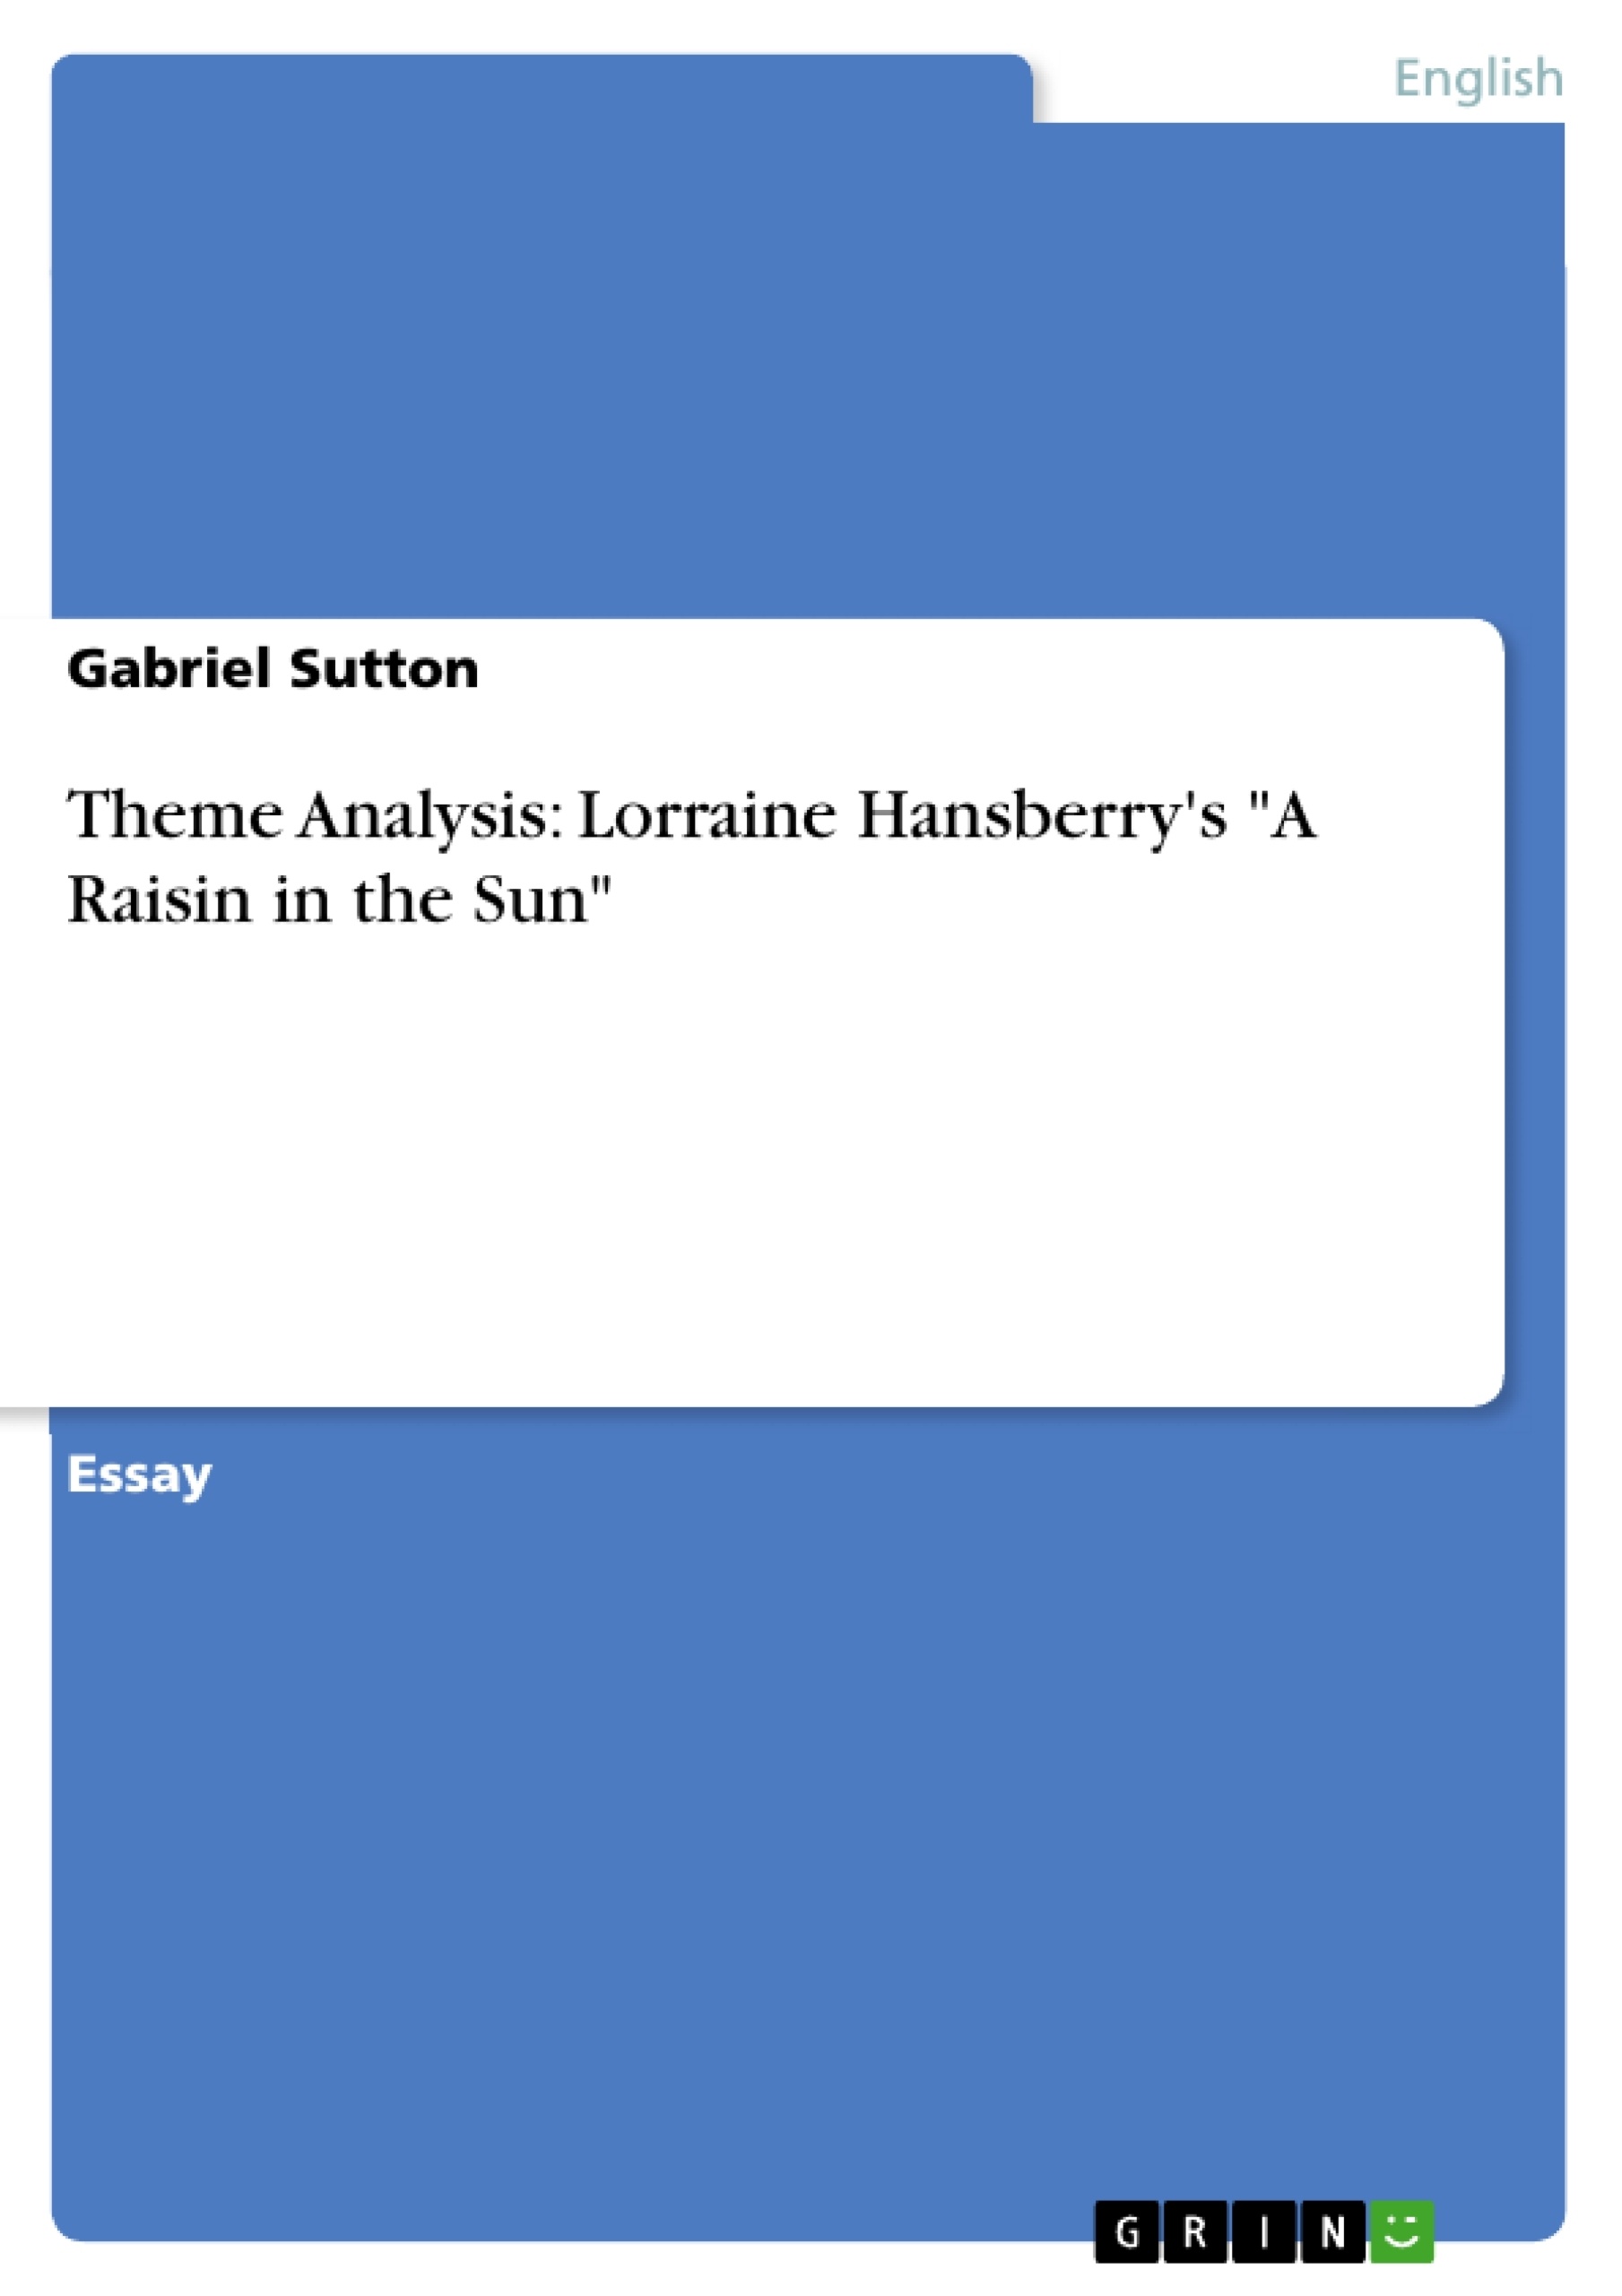 A raisin in the sun analysis essays